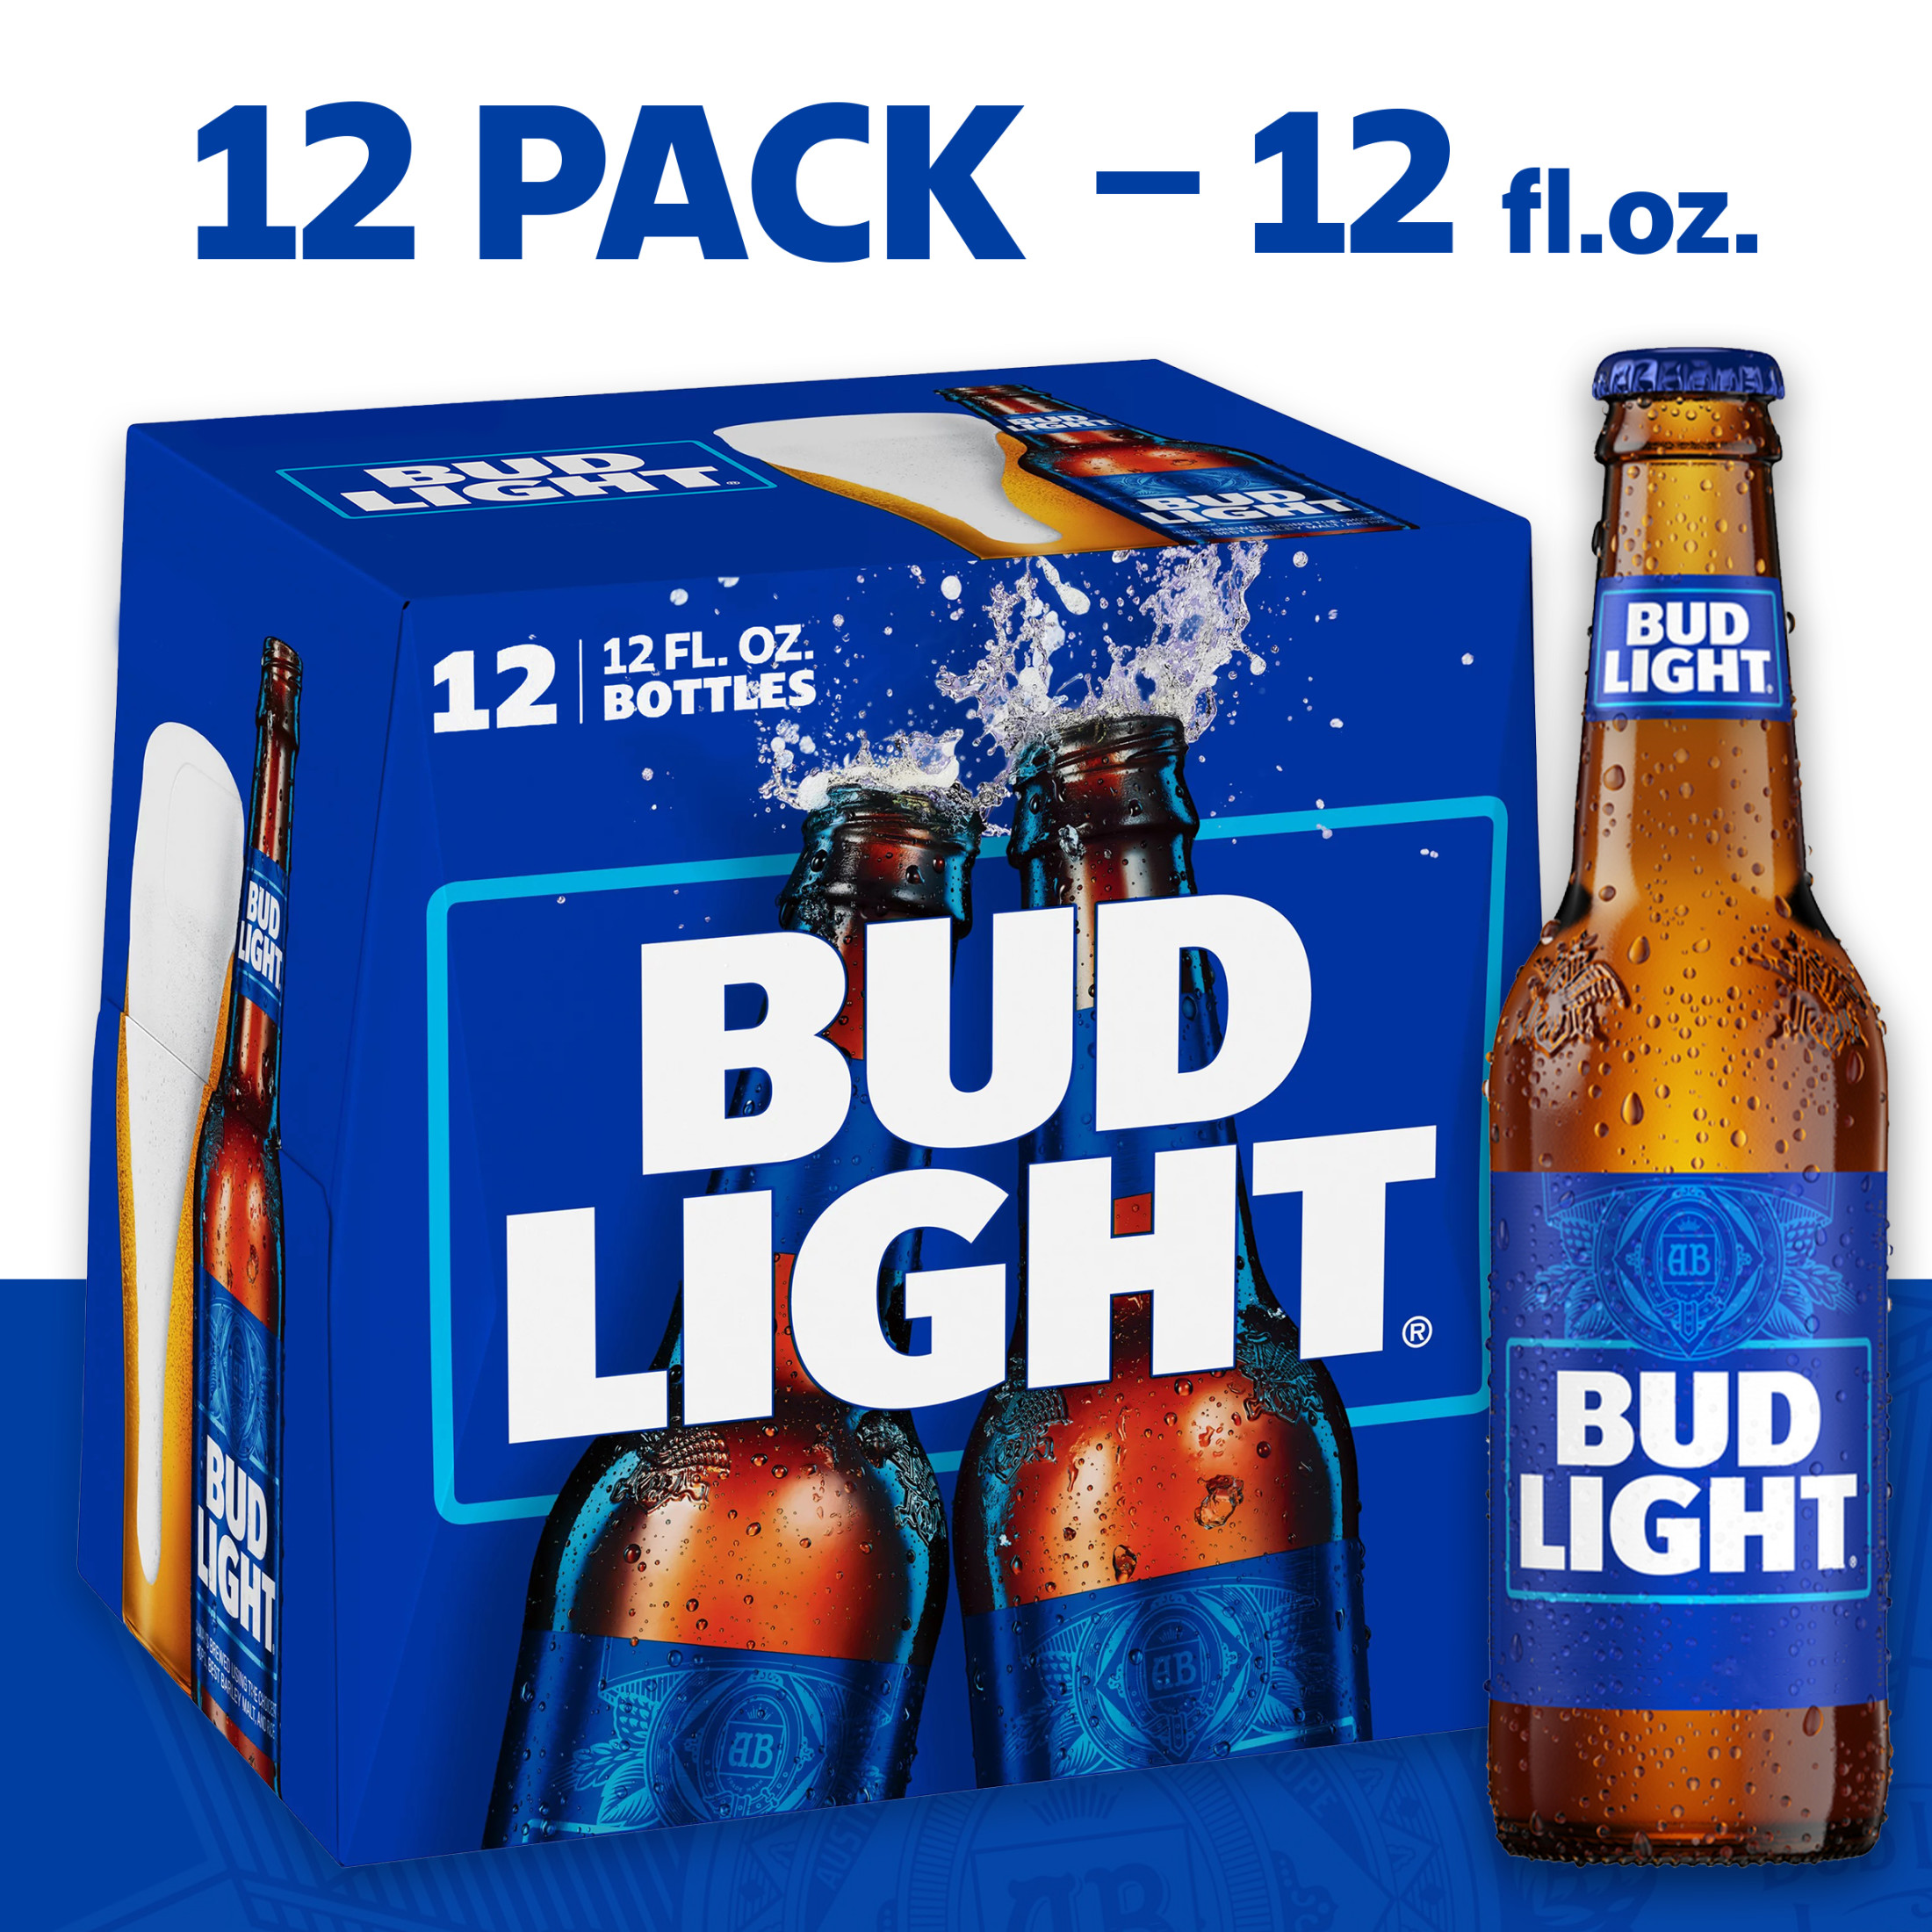 Bud Light Beer, 12 Pack Beer, 12 fl oz Bottles, 4.2% - Walmart.com